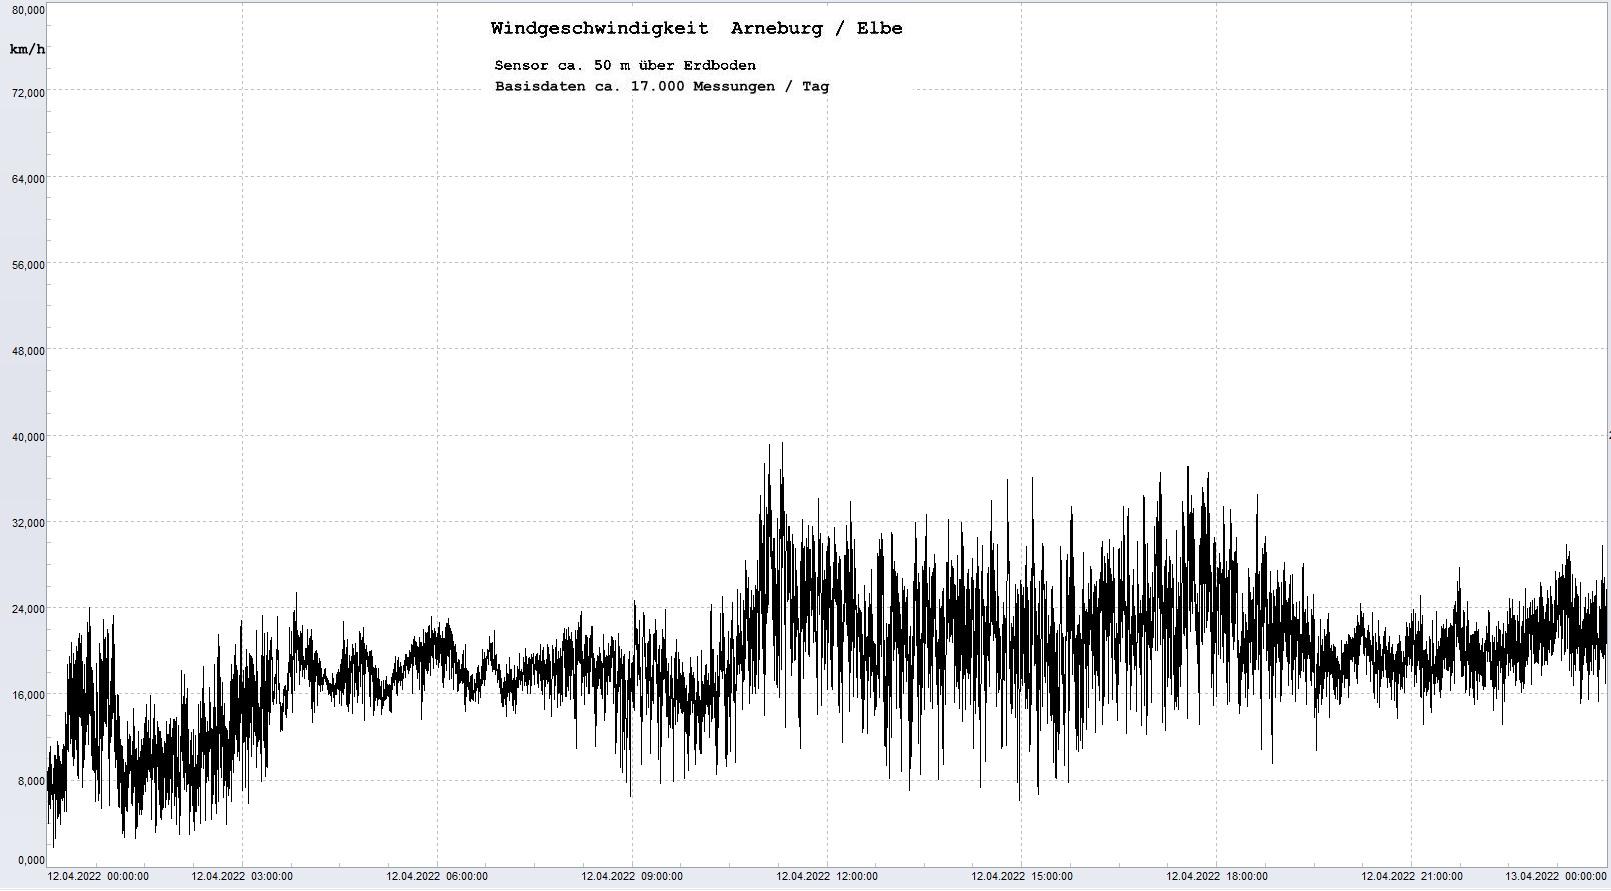 Arneburg Tages-Diagramm Winddaten, 12.04.2023
  Diagramm, Sensor auf Gebude, ca. 50 m ber Erdboden, Basis: 5s-Aufzeichnung